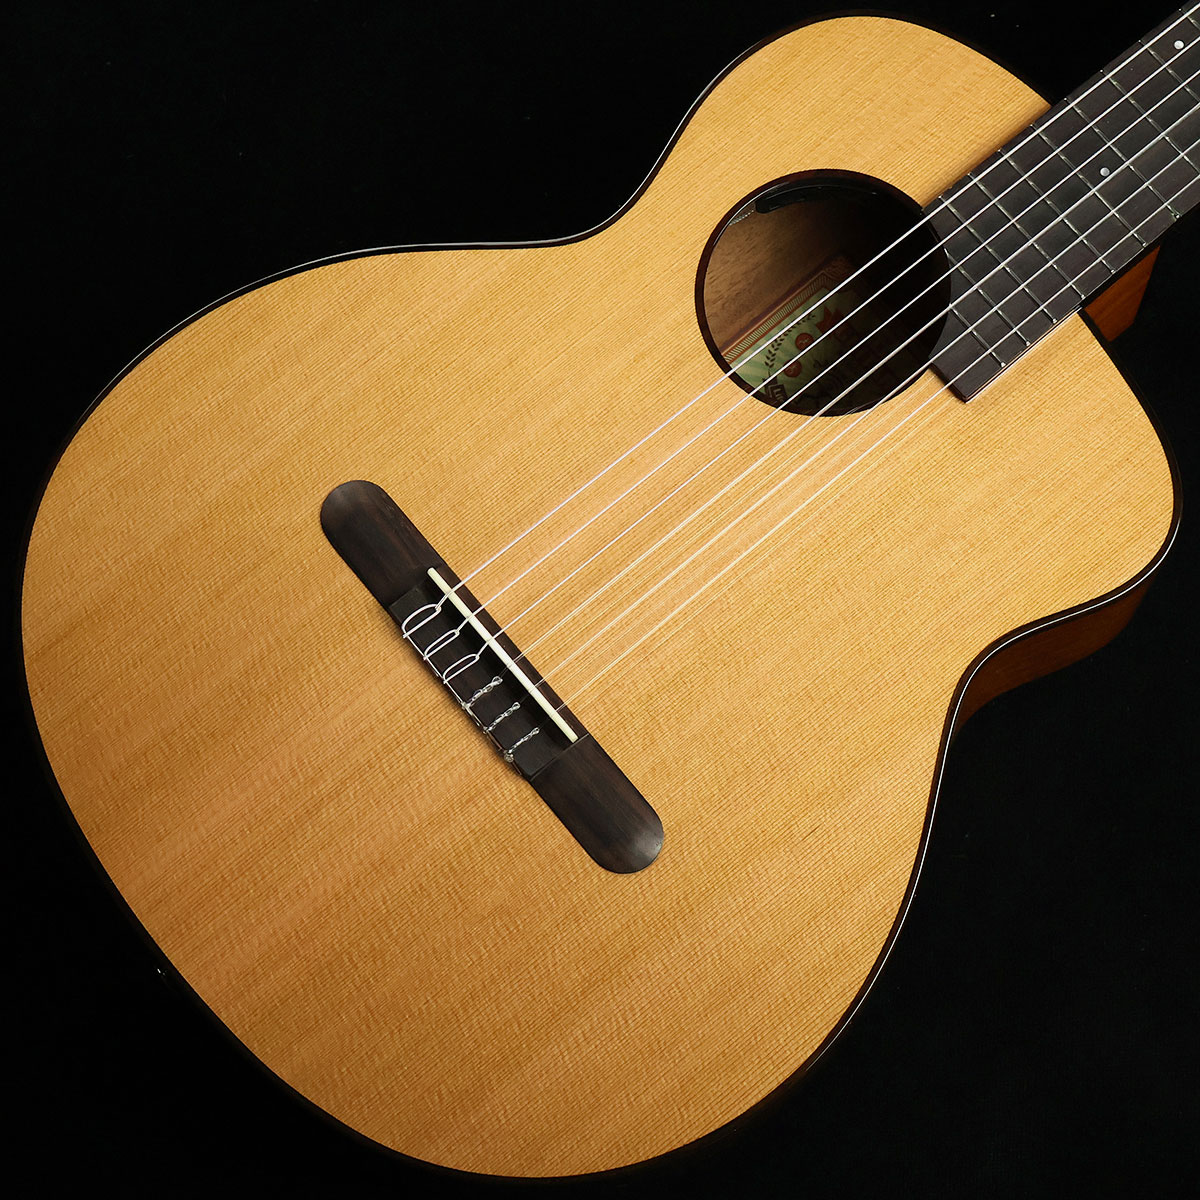 トラベルサイズのコンパクトなエレガット・ギター【特徴】個性的なデザインと独創的な設計で近年人気の高まりを見せている台湾発祥のブランド「aNueNue(アヌエヌエ)」。こちらの「aNN-MN14E」は、ナイロン弦が張られた小ぶりなトラベルギターのエレアコ仕様です。ボディトップにはシダーを、サイド&バックにはギターの定番材であるマホガニーを採用。独自の設計により、コンパクトながらもサイズを超えた豊かな鳴りを実現しています。ピックアップはナチュラルな特性で扱いやすさが特徴のaNueNueオリジナルのAir Blueを搭載。様々なシーンで活躍してくれる使い勝手の良さも魅力です。【杢目マニア花井のイチオシポイント！】「お手頃な価格でコンパクトなサイズのエレガット」をお探しの方には是非ともオススメしたいこちらのモデル。クラシックギターのトップ材などでもポピュラーなシダーをボディトップに採用しており、温かみのある柔らかい鳴りが特徴となっています。ピックアップシステムも搭載しているので使い勝手も抜群ですよ。この商品についての詳しいお問い合わせは TEL：0570-020-025 または「お問い合わせフォーム」よりお願いします。 【花井's Profile】長野県松本市出身。三度のメシより杢（もく）が好き、自他ともに認める杢目マニア。14年間勤務していた松本店では「ギター生産量日本一」の環境を活かし地元のメーカーや工房とコラボレーションしたショップオーダーモデルなどを多数企画。ギターの製作現場にて数々の職人とミーティングを重ね木材の知識やカスタムオーダーのノウハウを蓄積。これまで培った知識と経験を活かし、彼自身がセレクト〜撮影までおこなったギターをオンラインストアに掲載中。その魅力を全国のギターファンに伝えている。【詳細情報】ボディトップ ： シダーボディサイド ： マホガニーボディバック ： マホガニーネック ： マホガニー指板 ： ローズウッドナット ： 水牛骨ブリッジ ： ローズウッドナット幅 ： 48mmスケール ： 610mmケース ： ギグバッグ弦 ： SAVAREZ 510CJピックアップ ： Air Blue Dual Pick Up SystemJANコード：4711099221363【mtmt_hni】